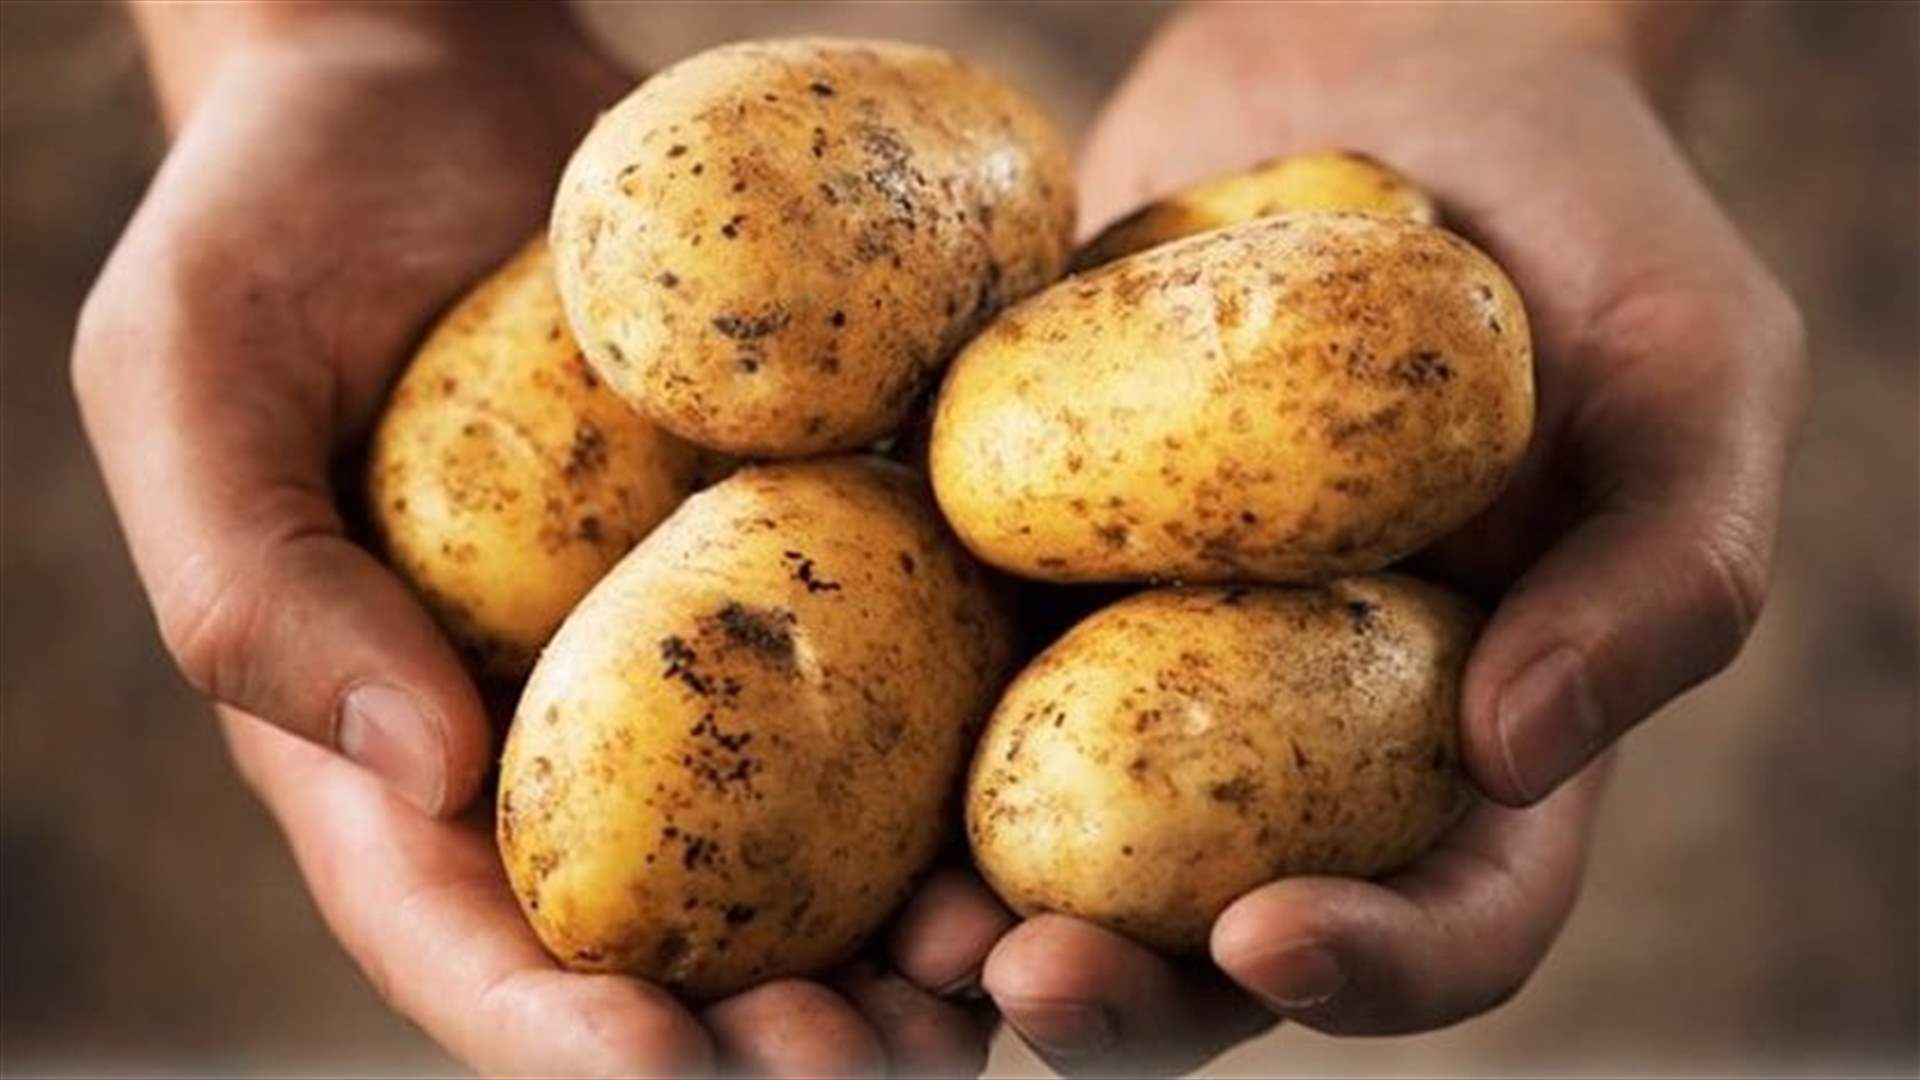 العاملون في زراعة البطاطا: أسعار البطاطا اللبنانية دون نصف التكلفة الفعلية